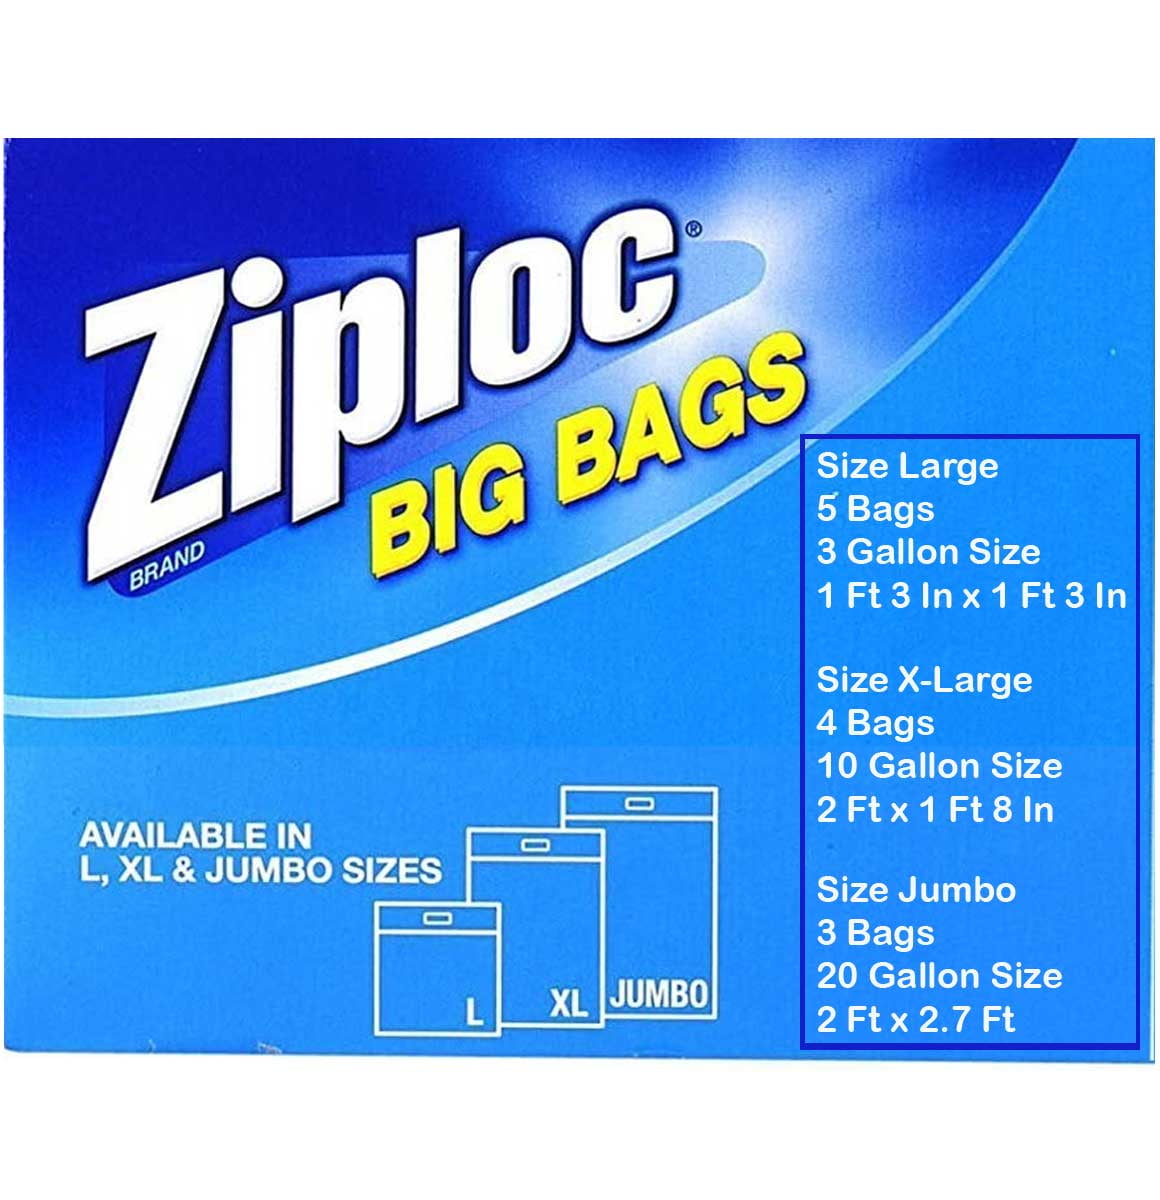 Lot Of 2 Ziploc Big Bags XL 10 Gallon Quantity 3. Large 3 Gallon Quantity 4